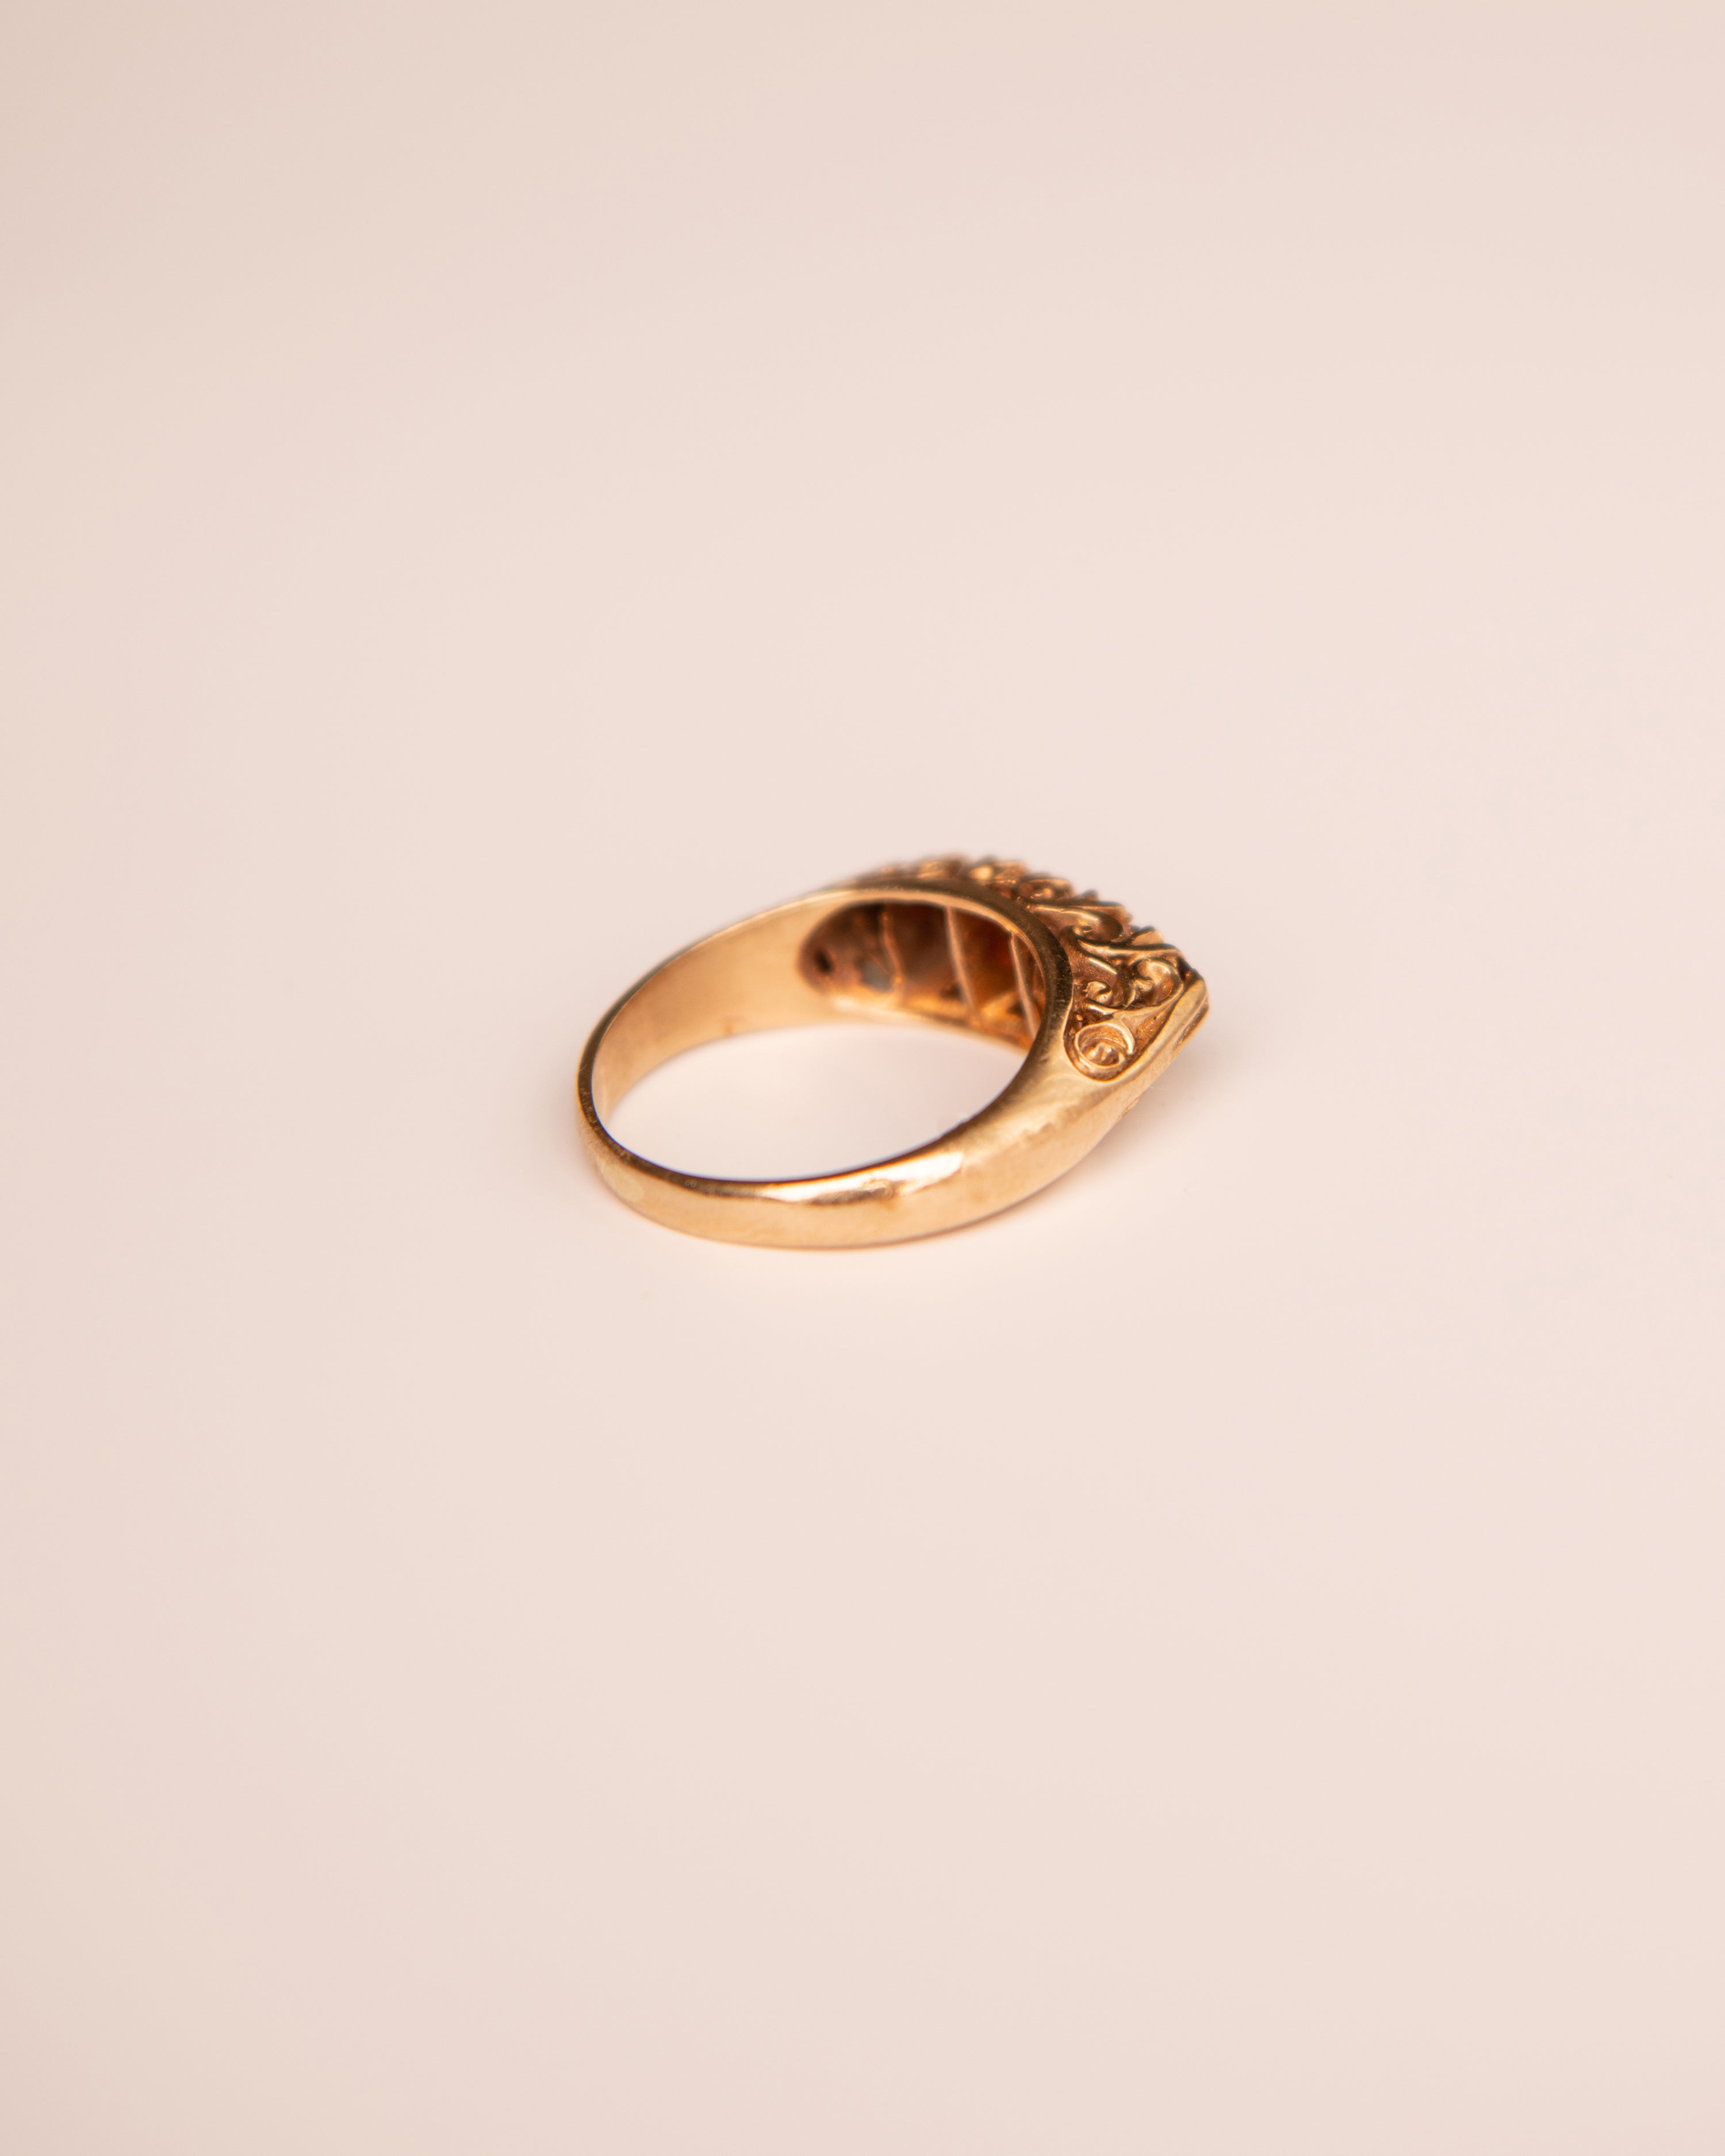 Acacia 9ct Gold Garnet Ring